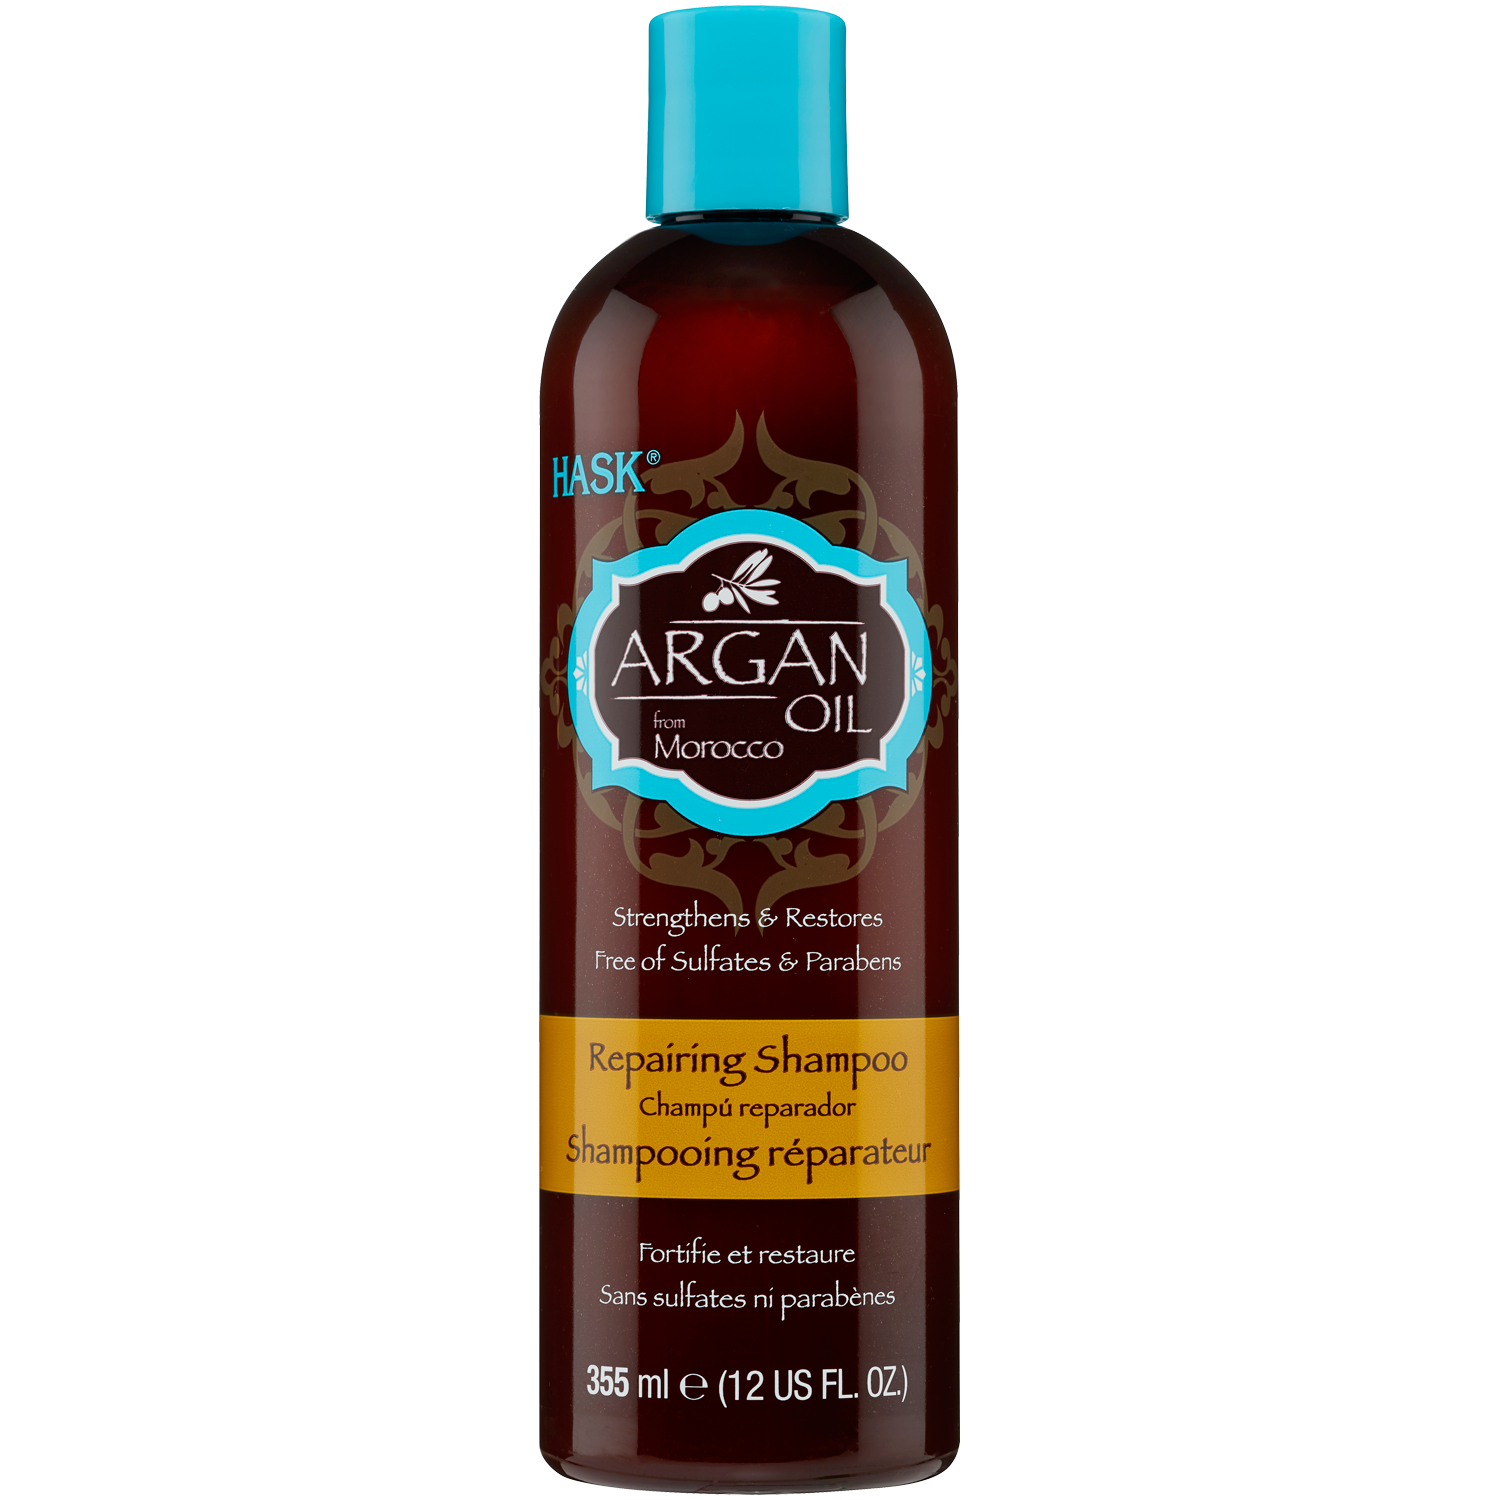 szampon z olejkiem arganowym hebe smooth